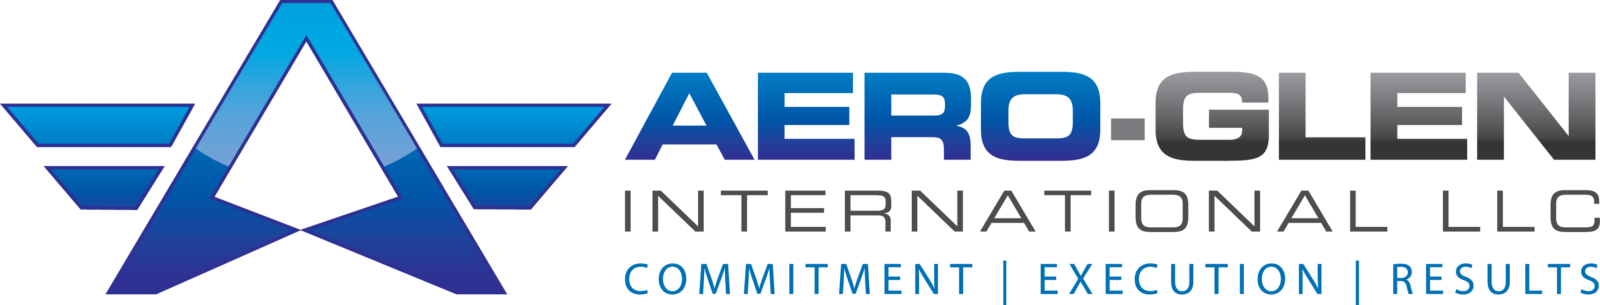 Aero-Glen International Logo